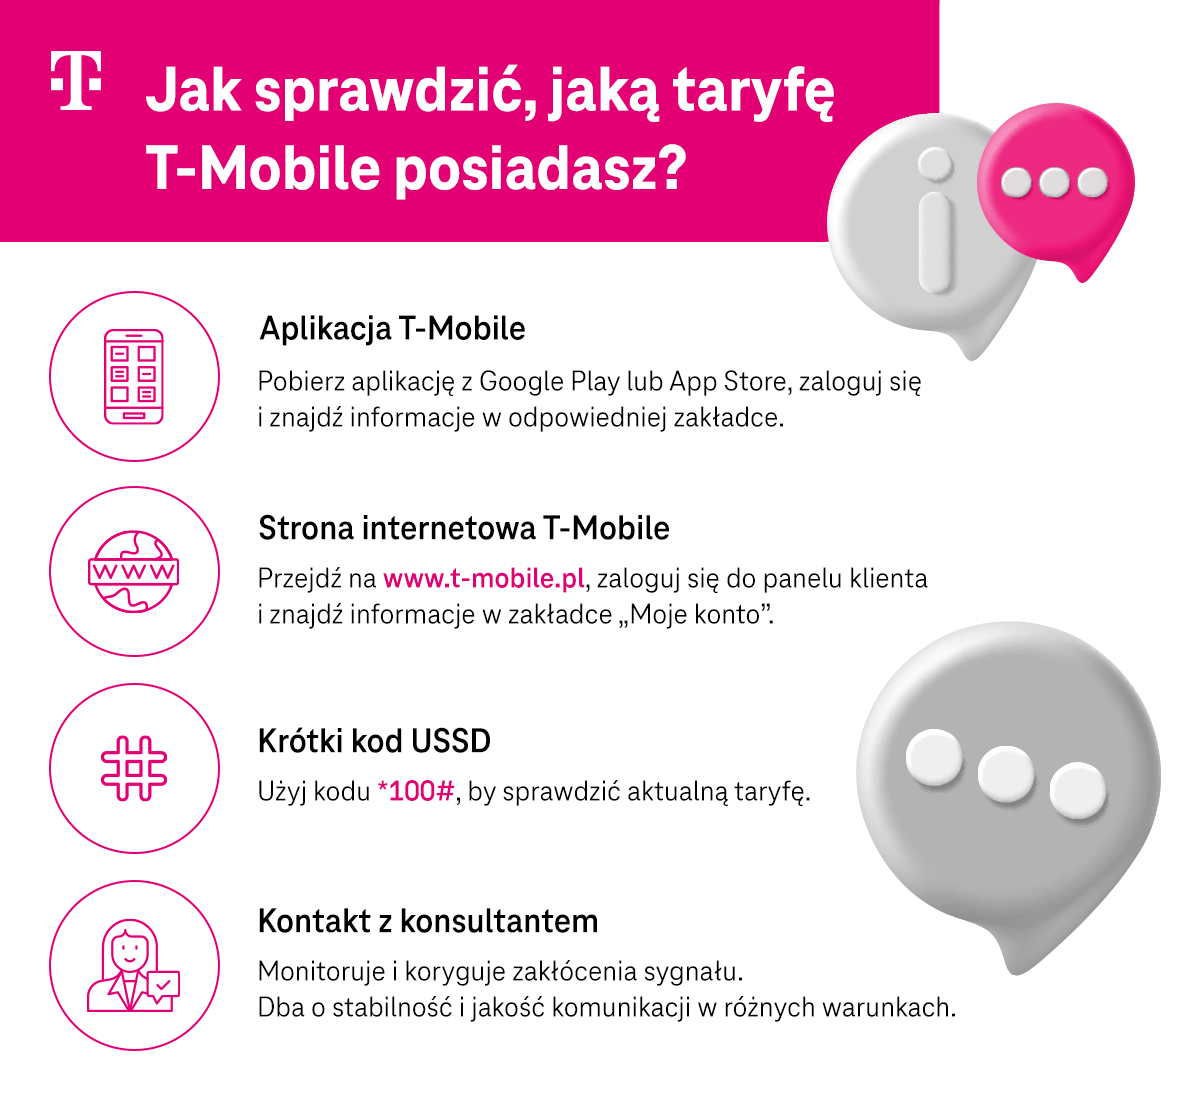 Jak sprawdzić, jaką taryfę T-Mobile posiadasz? - aplikacja T-Mobile, strona internetowa T-Mobile, krótki kod USSD, kontakt z konsultantem - infografika